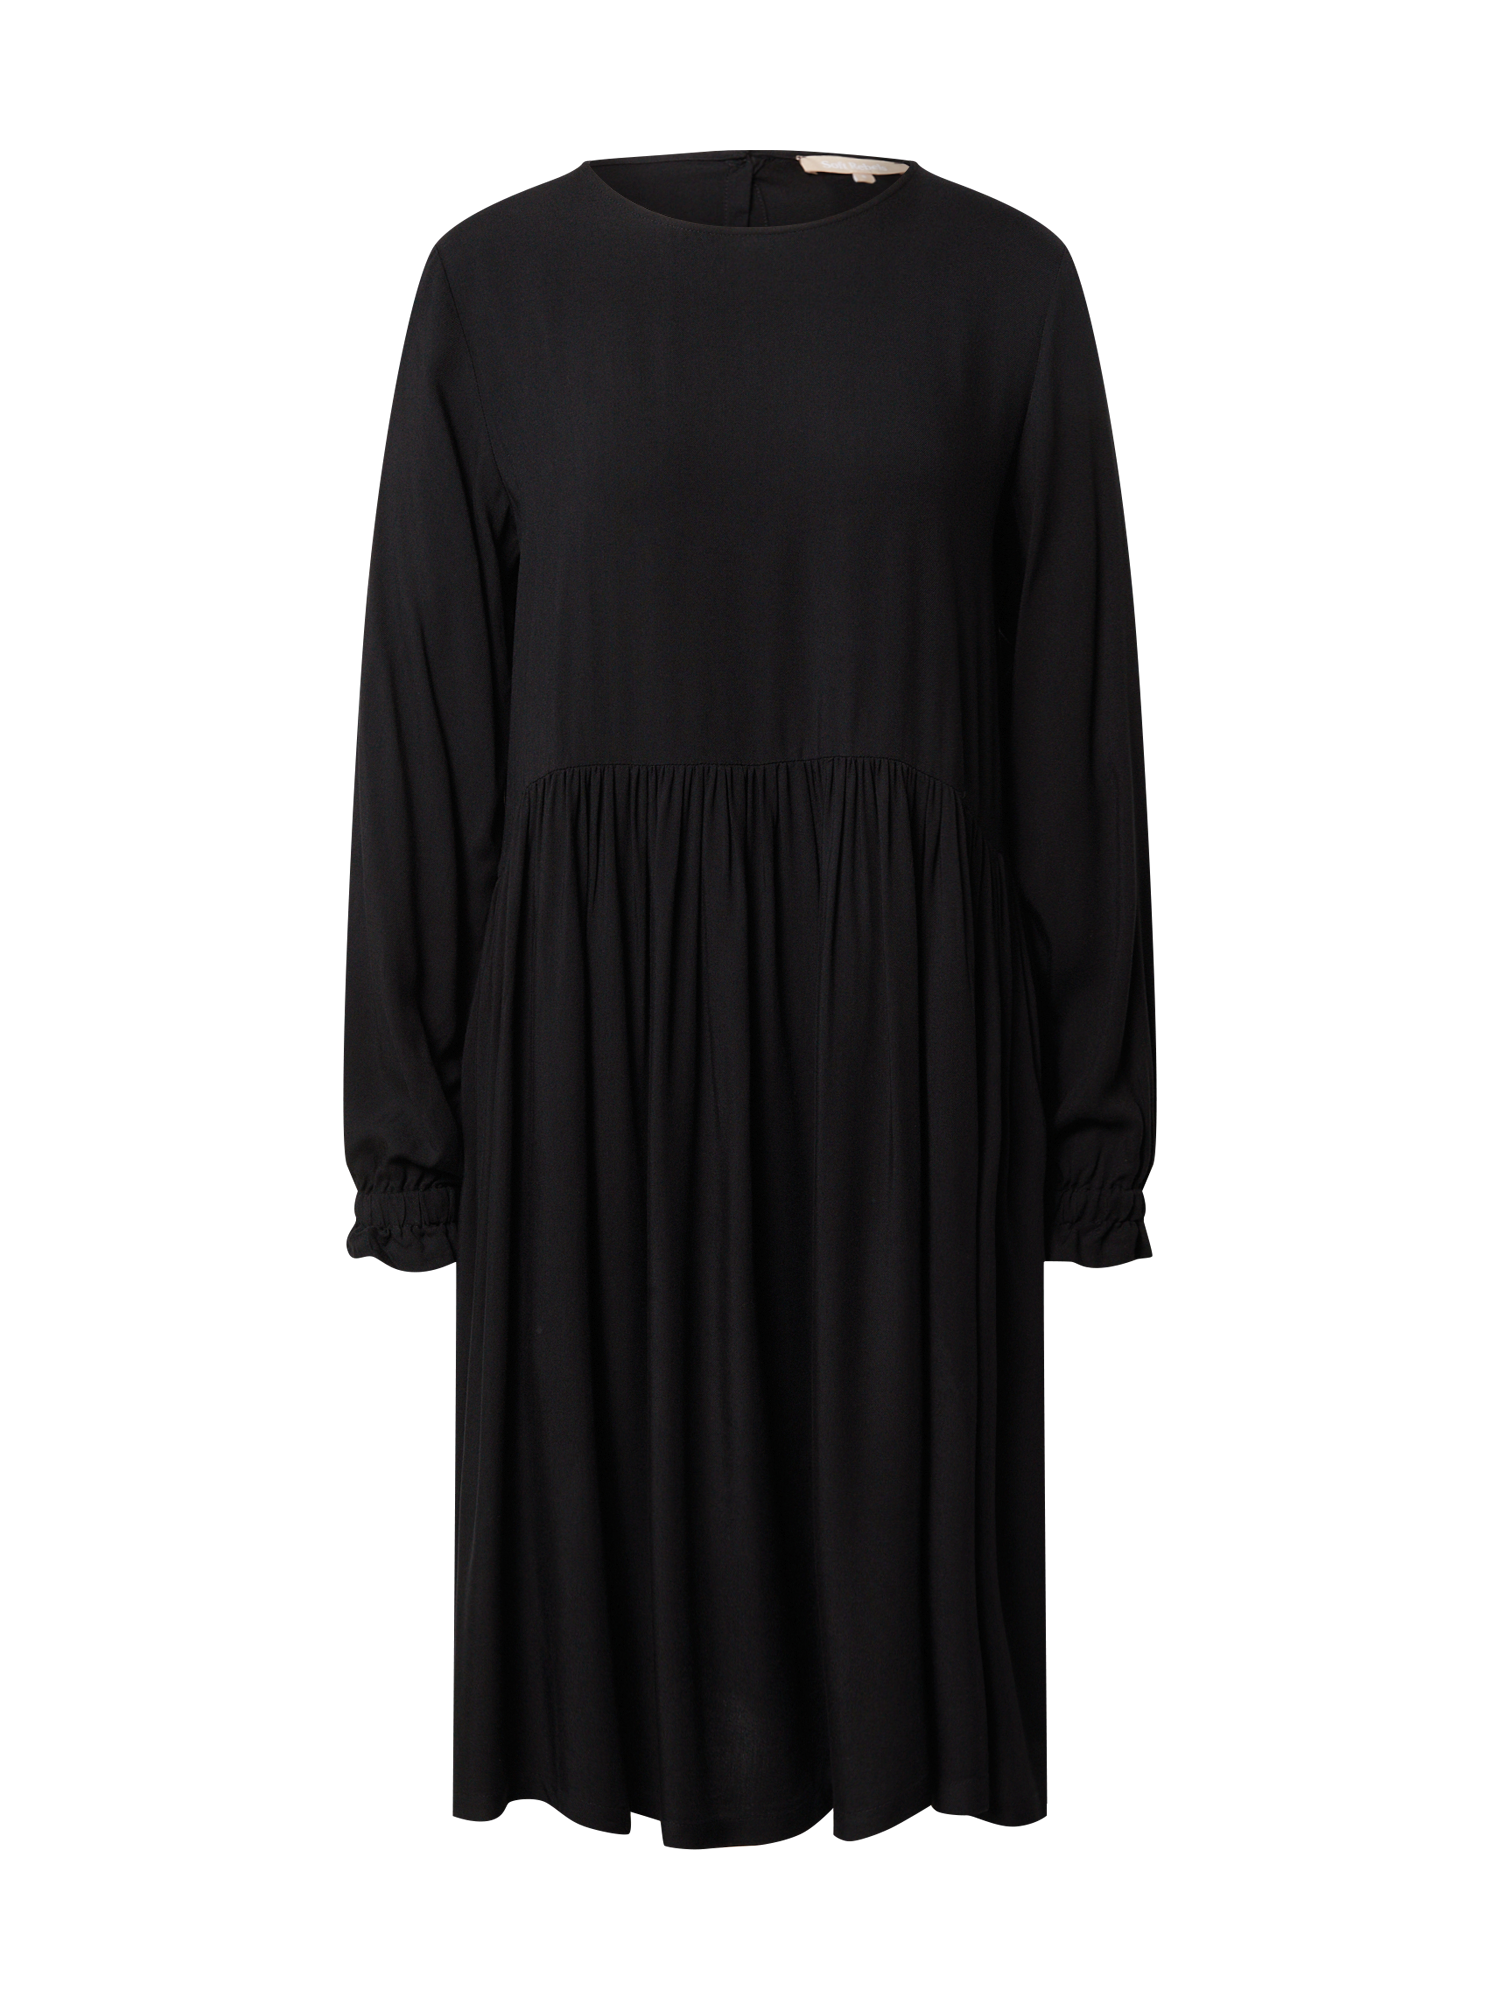 Kobiety Odzież Soft Rebels Sukienka koszulowa Gianna w kolorze Czarnym 